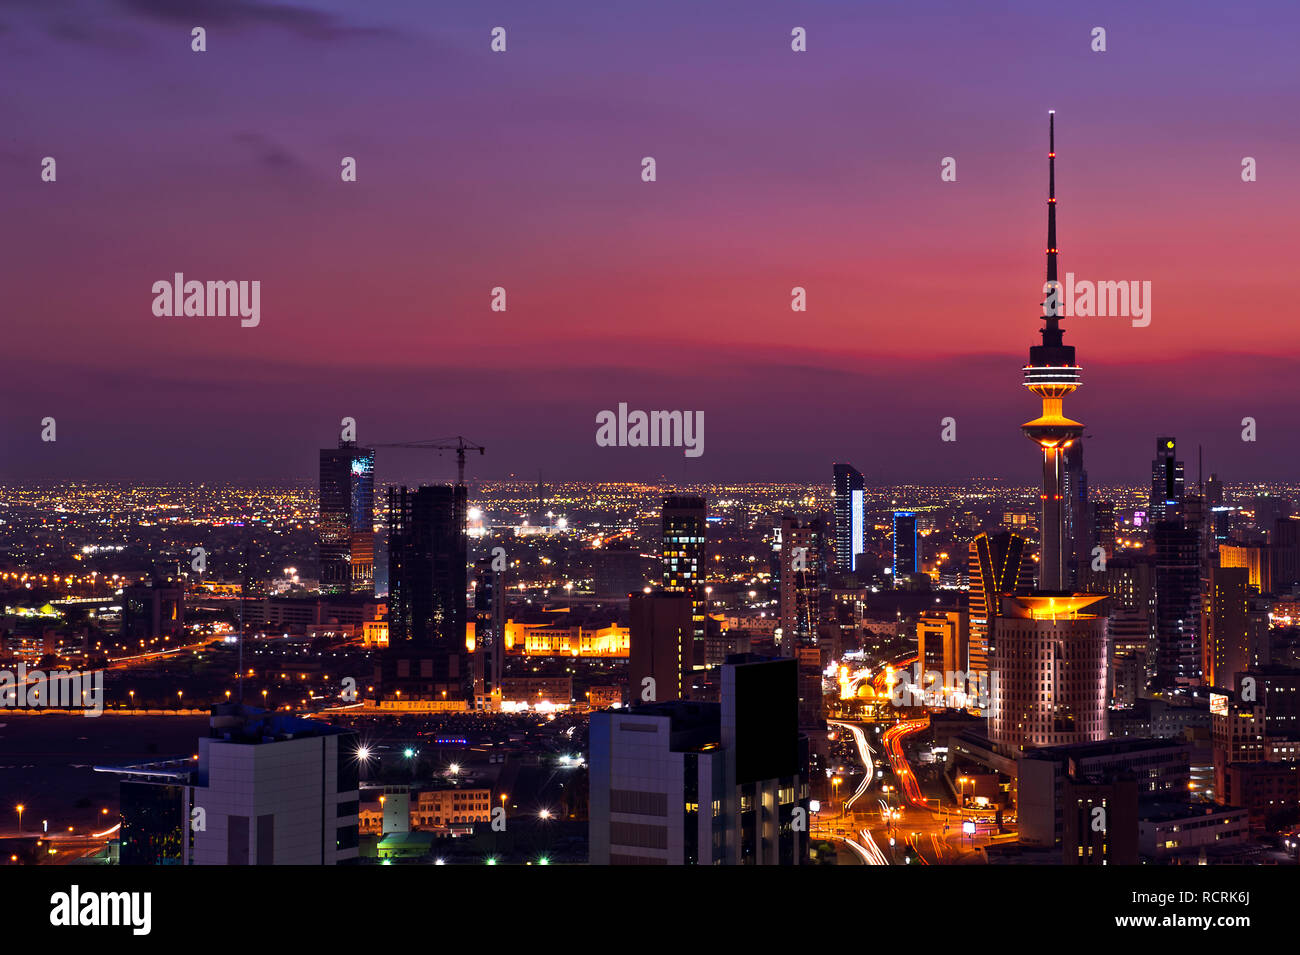 Kuwait City liberation tower Stock Photo